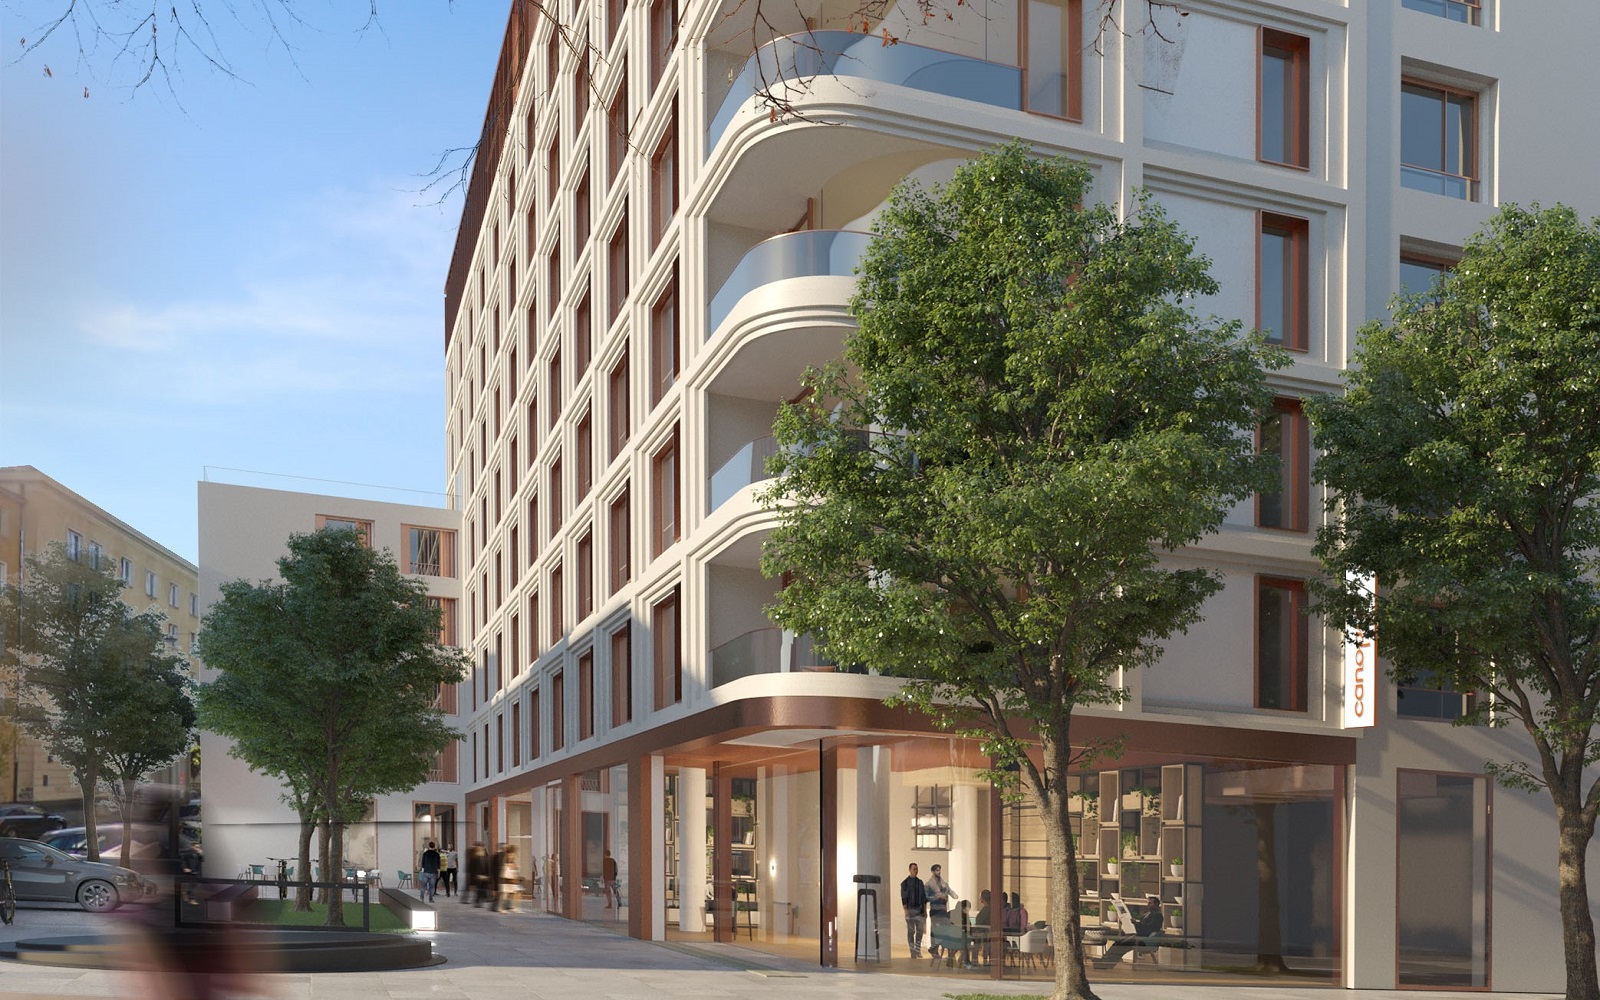 Hilton ujawnia plany pierwszego w Polsce Canopy by Hilton • Hotel Designs